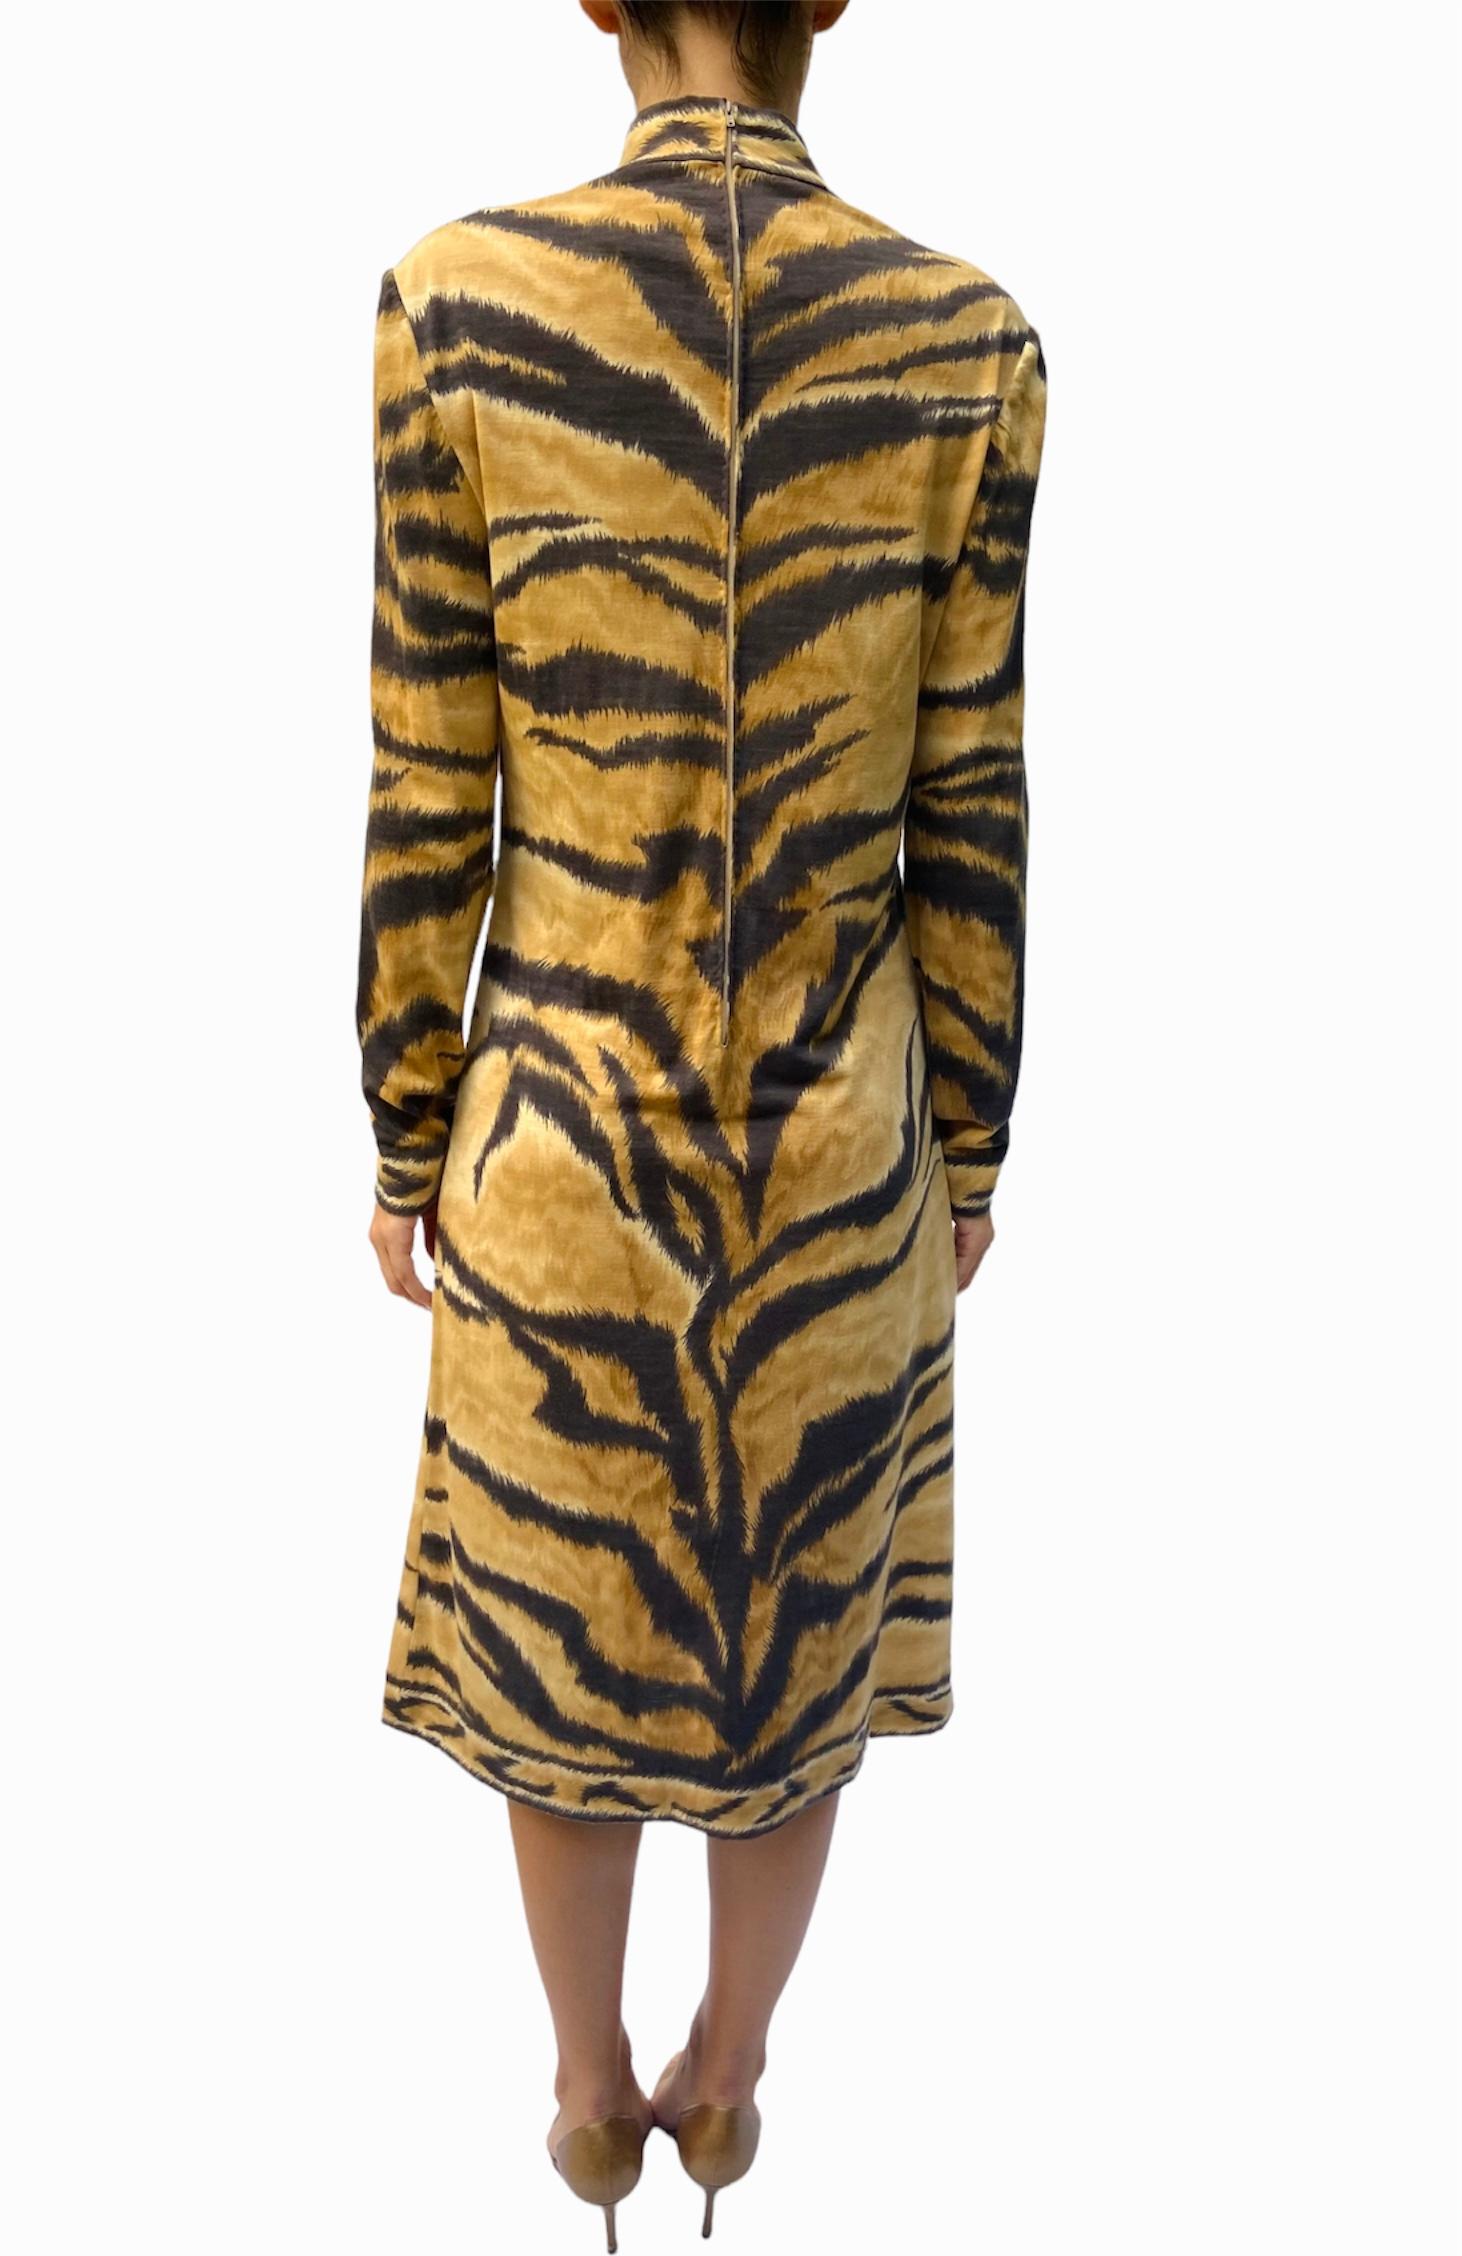 1980S LEONARD Wool Jersey Tiger Striped Long Sleeve Dress 4